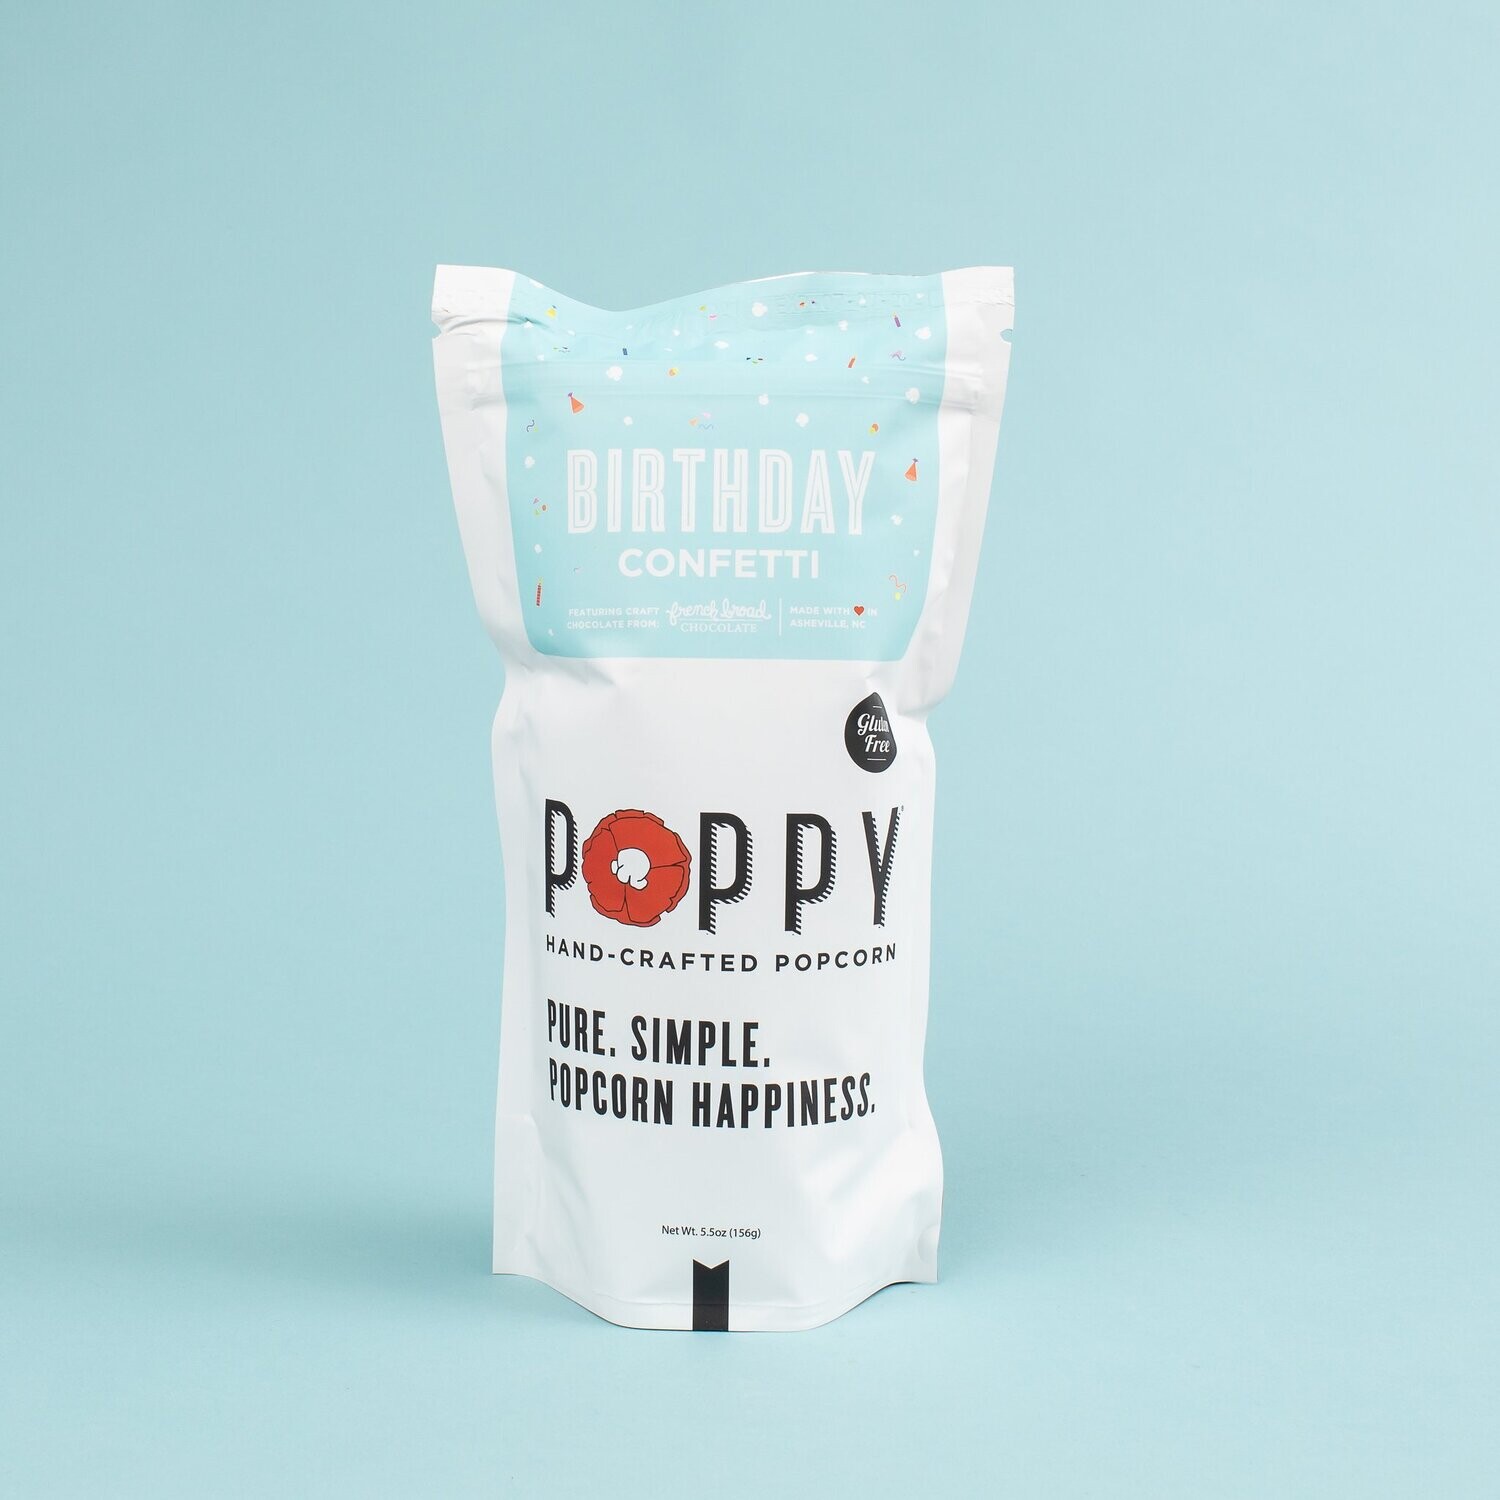 Poppy Birthday Confetti 